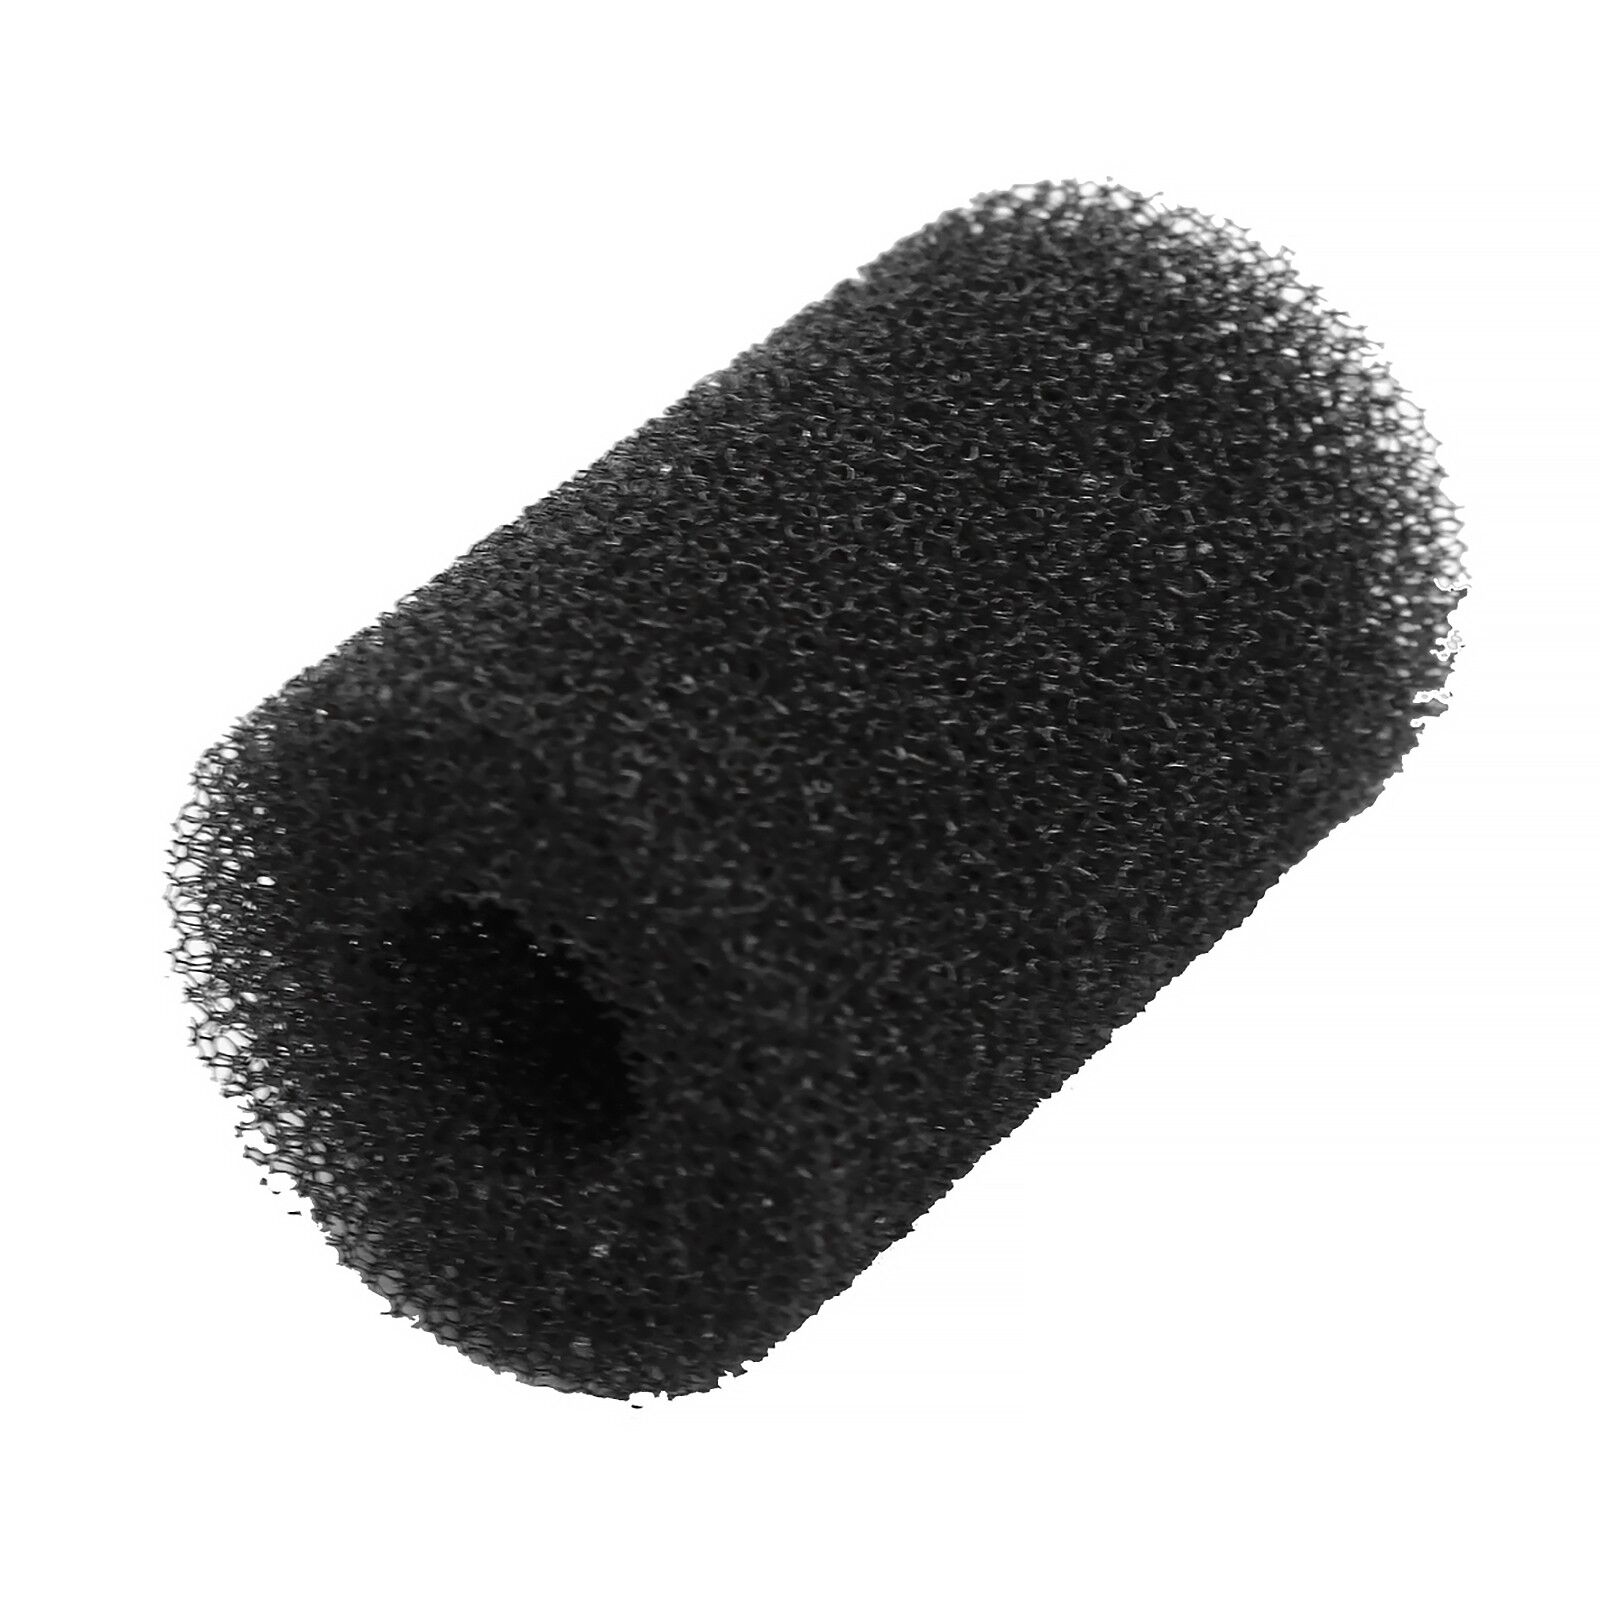 Dennerle - Filter Sponge / Intake Protector - Scaper's Flow